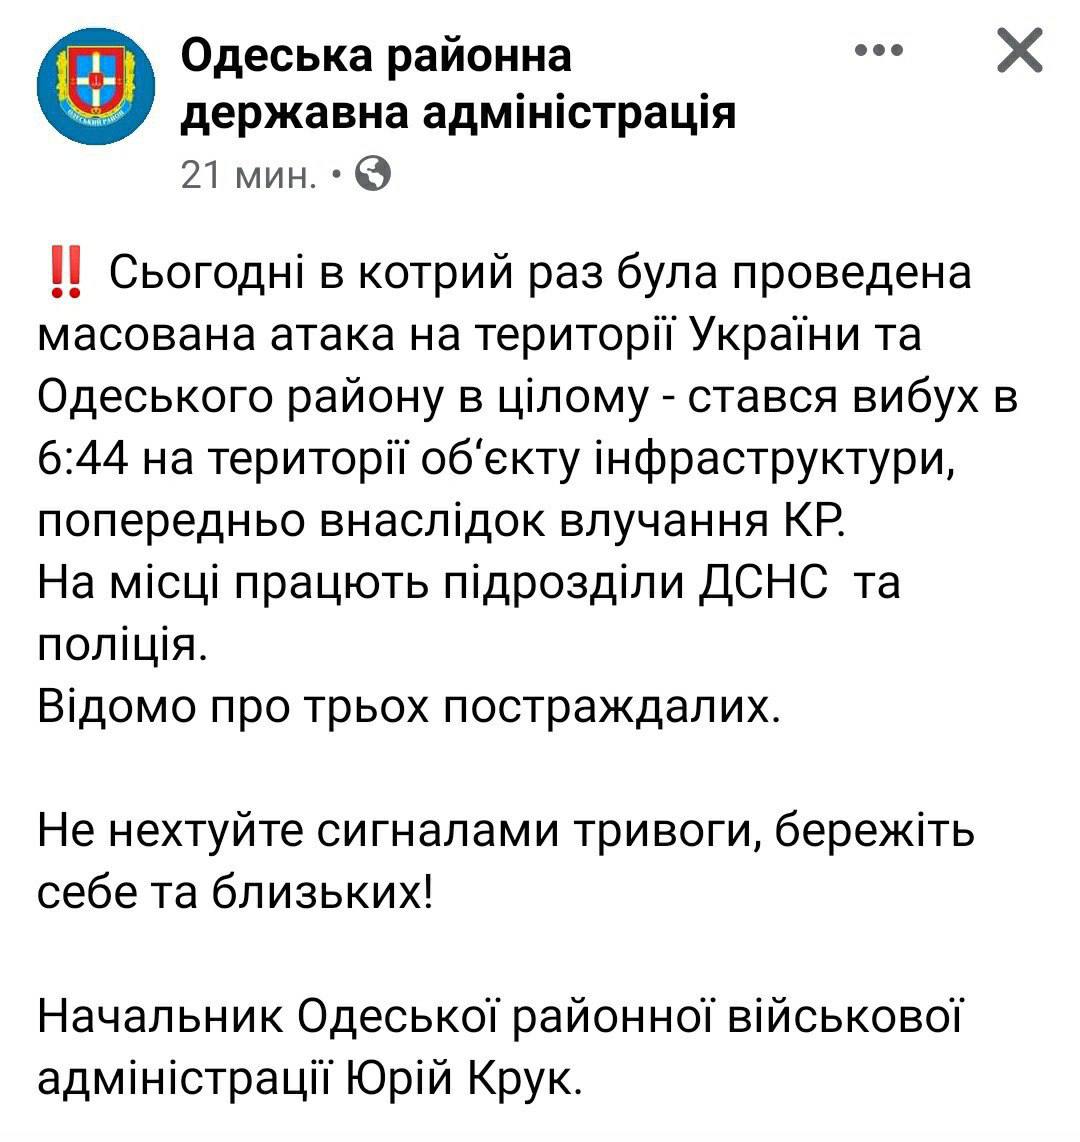 ❗️В результате утренней ракетной атаки на Одесскую область пострадали три человека — сообщает Одесская районная администрация